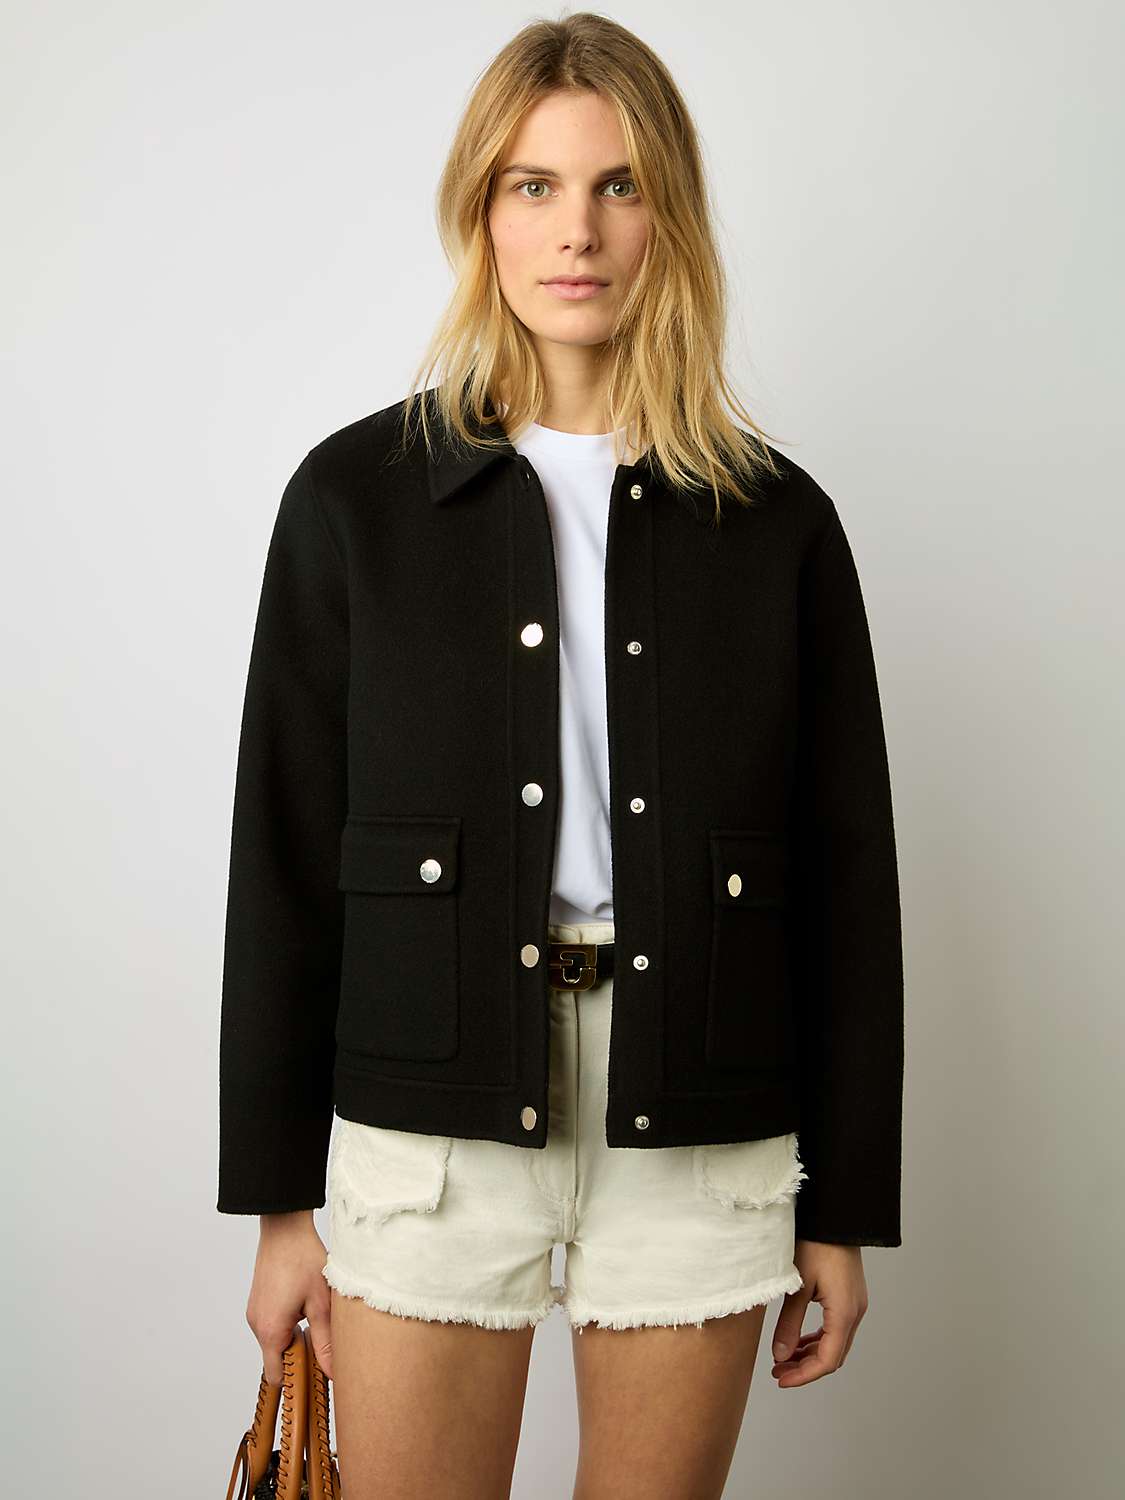 Buy Gerard Darel Nattie Wool Blend Jacket, Black Online at johnlewis.com